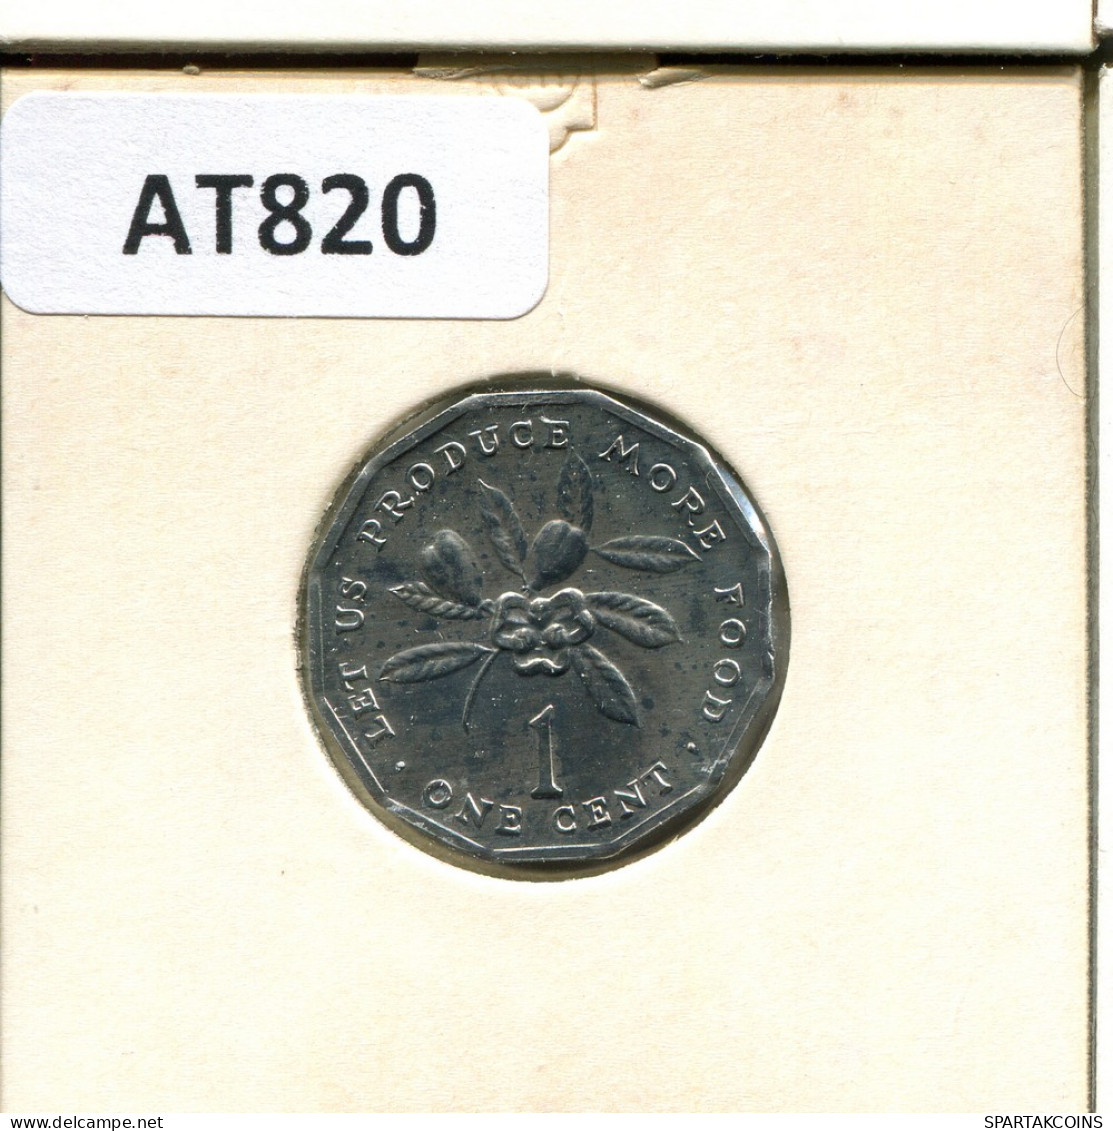 1 CENT 1975 JAMAICA Coin #AT820.U - Jamaica